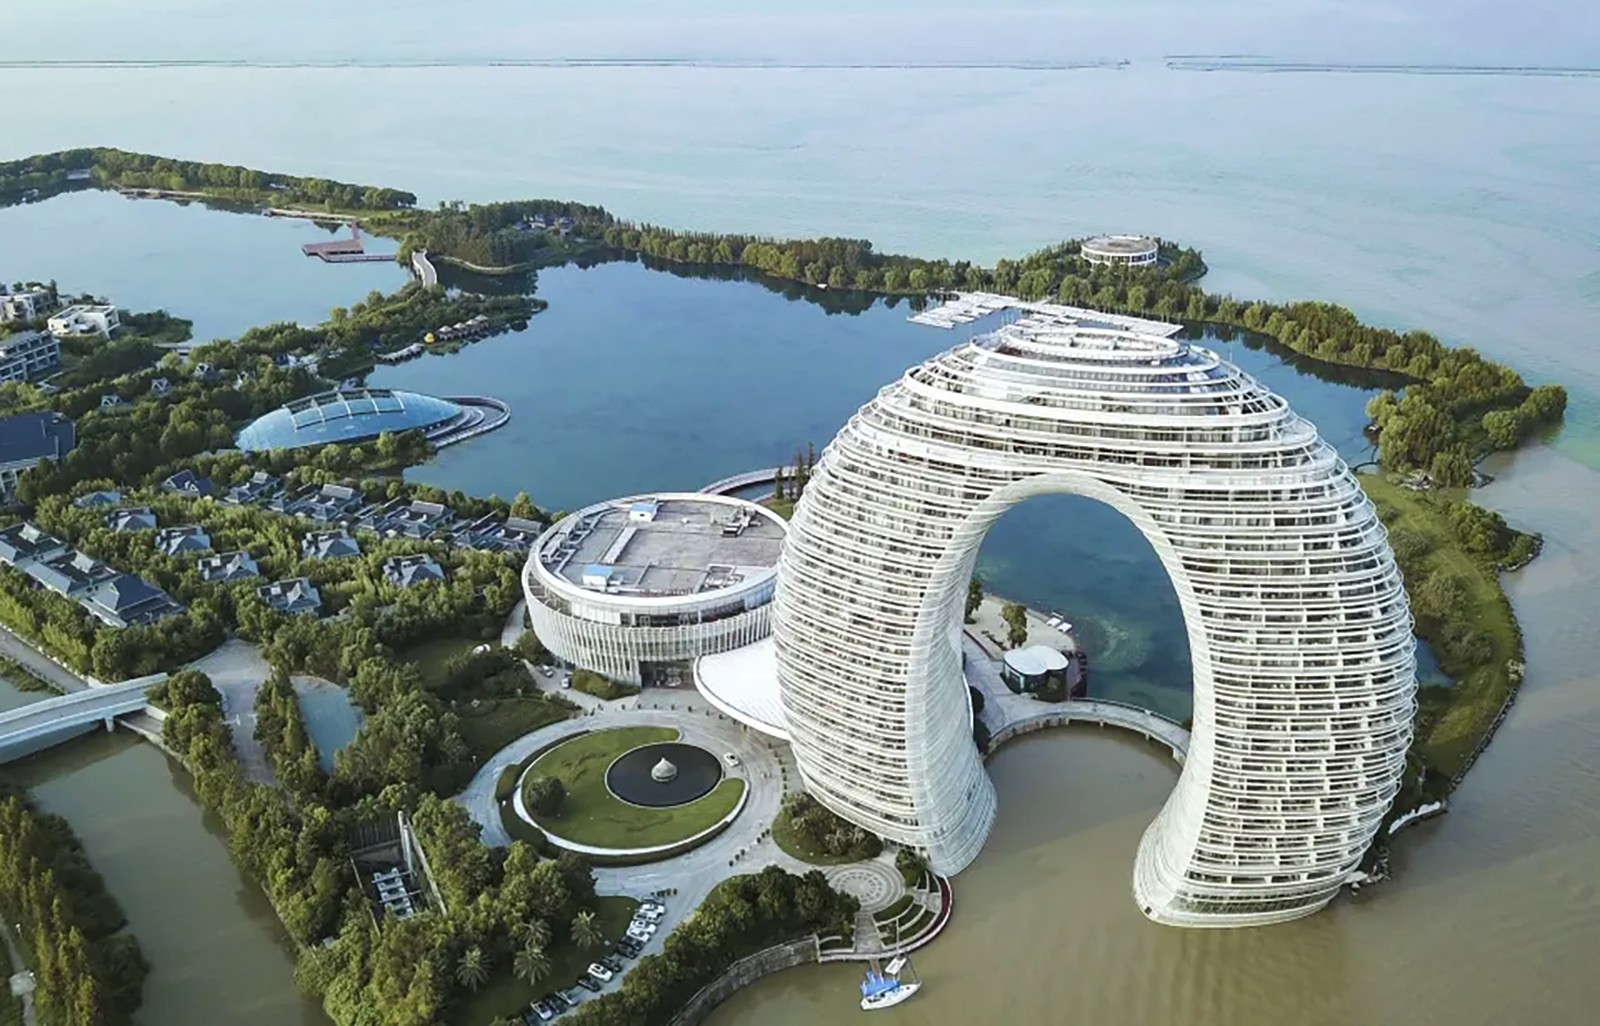 Τα πιο “διαστημικά” δωμάτια ξενοδοχείου σε ένα κορυφαίο αρχιτεκτονικό κομψοτέχνημα